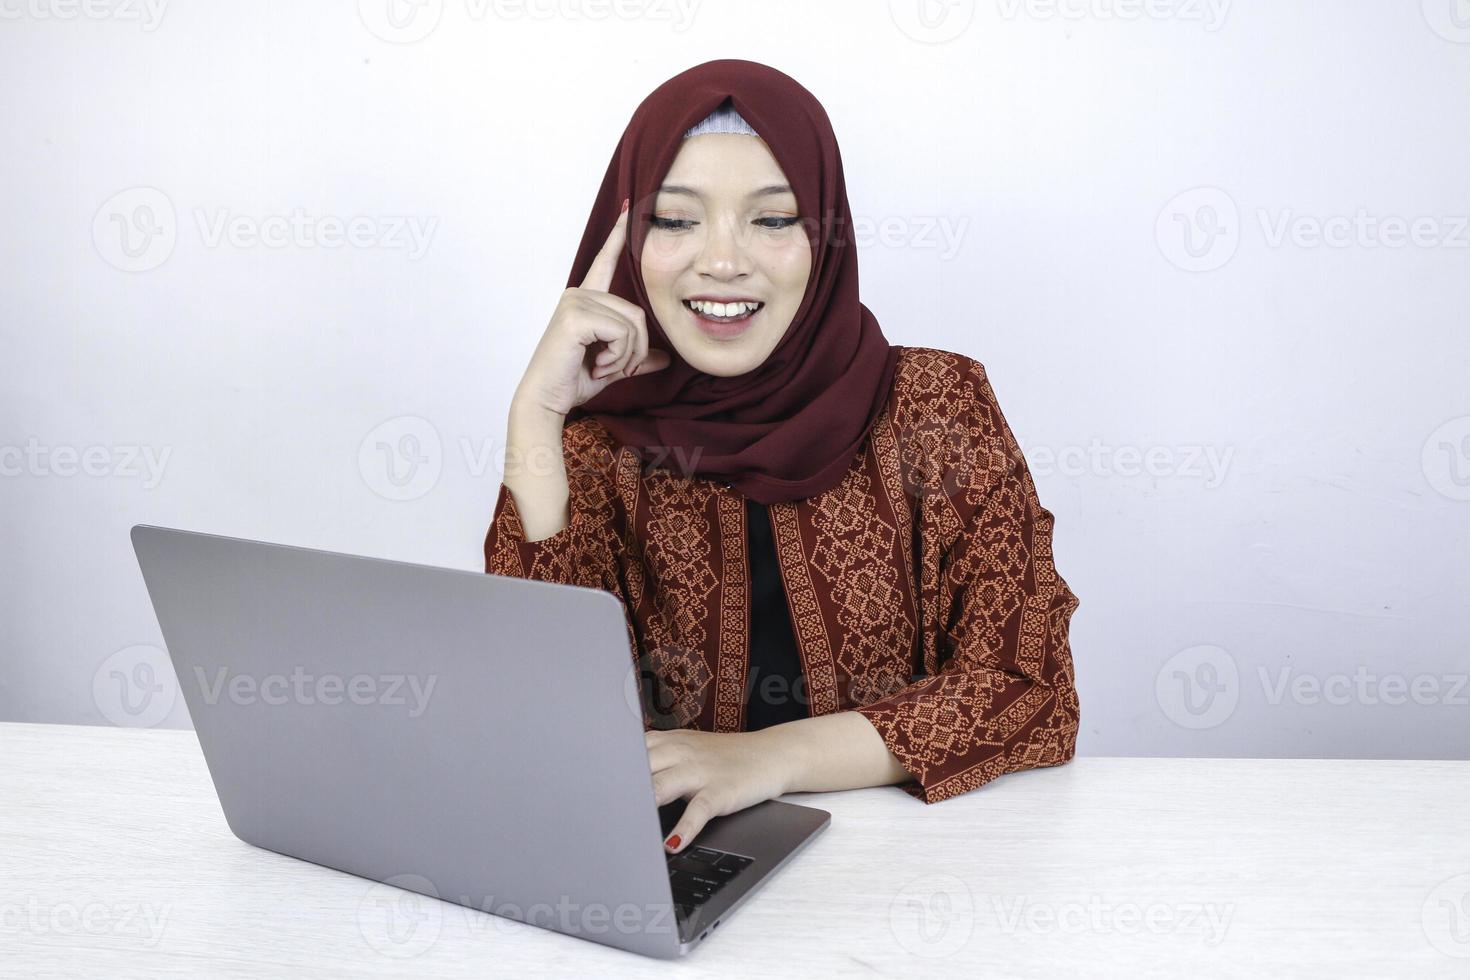 jeune femme islamique asiatique sourit avec un geste de pensée regardant sur l'espace vide à l'avant de l'ordinateur portable photo